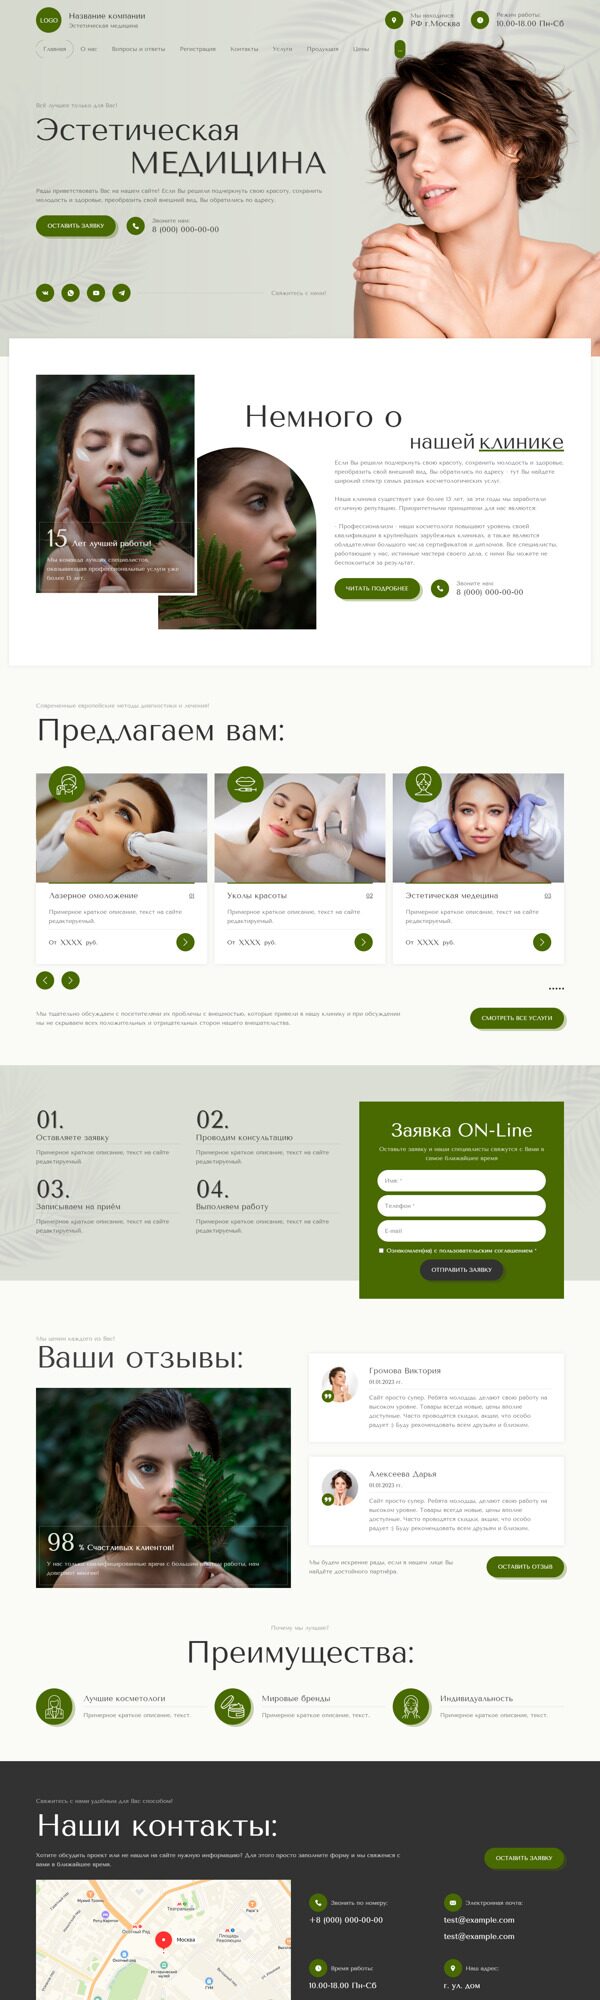 Готовый Сайт-Бизнес № 5354636 - Эстетическая медицина, косметология (Десктопная версия)